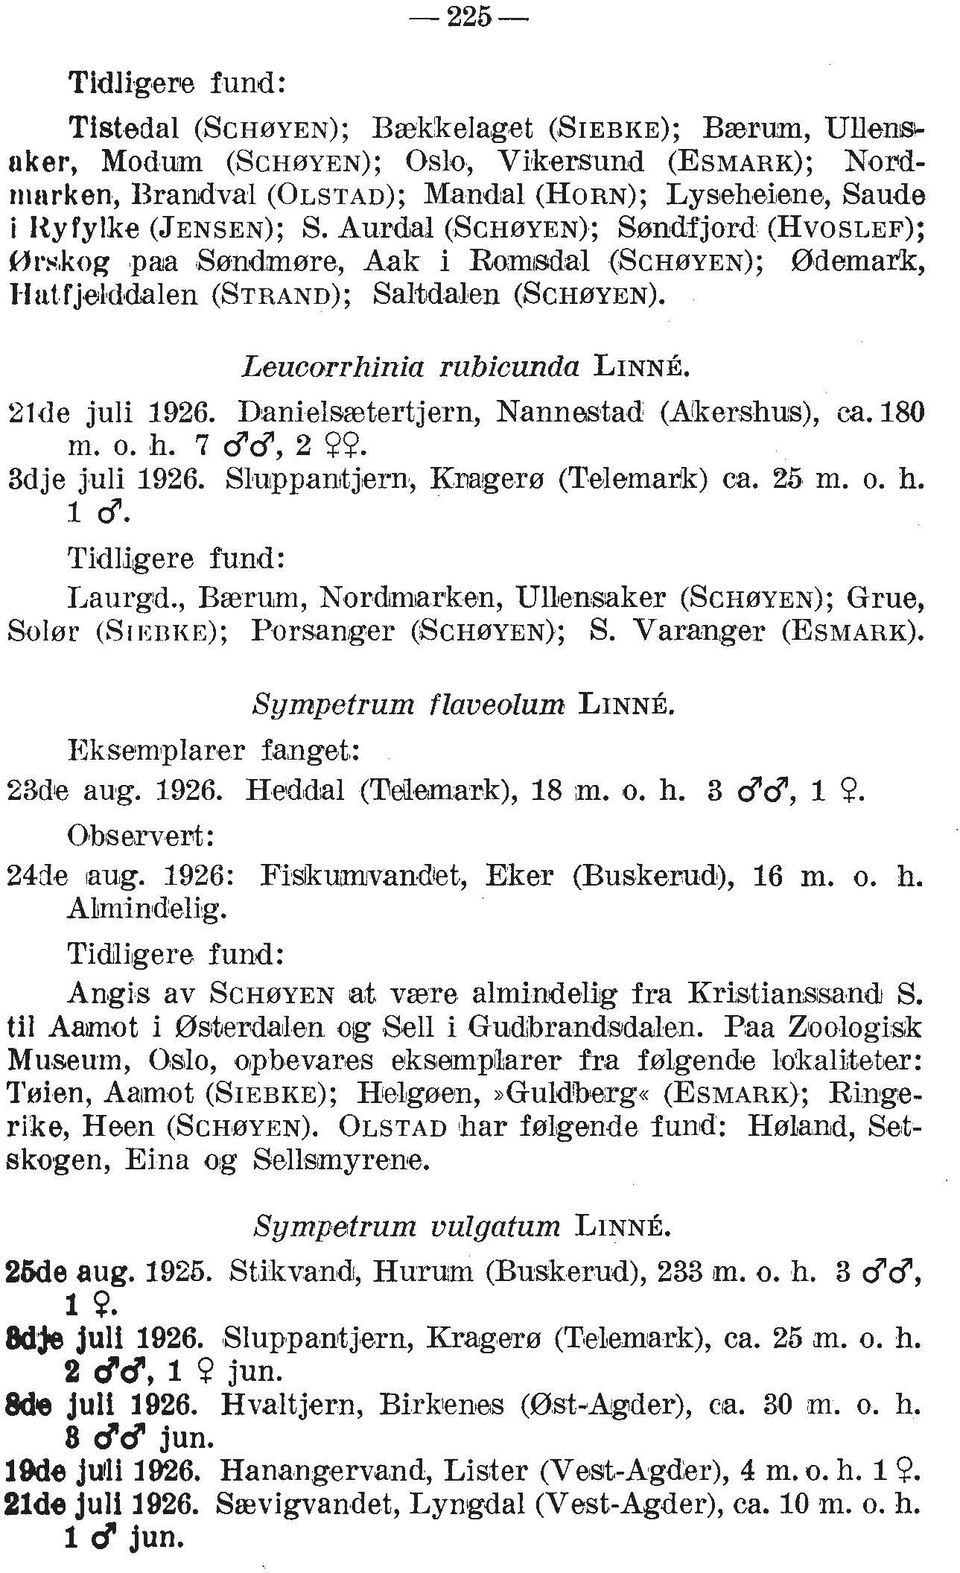 21de juli 1926. Danielmtertjern, Nannwtad (Akershus), ca. 180 m. o. h. 7 dd, 2 99. 3dje juli 1926. Sluppanitjern, Knagers (Telemark) ca. 25 m. o. h. 1 d. Tidldgere fund: Laurgd.